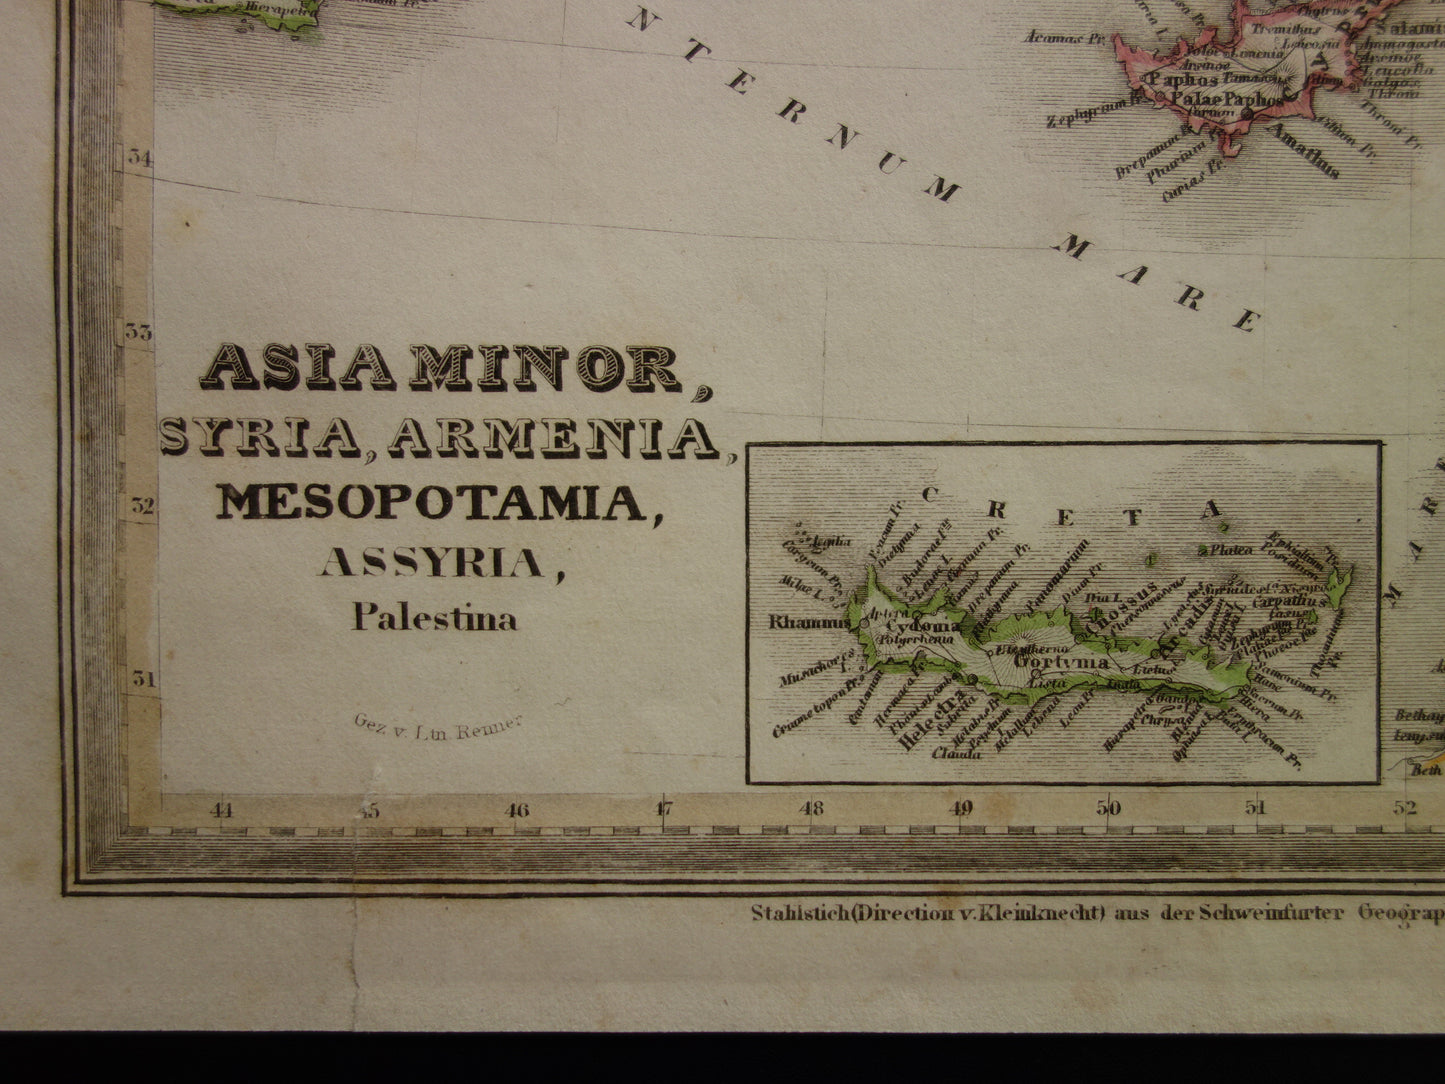 KLEIN AZIË oude kaart van Turkije Syrië Mesopotamië in de oudheid 1850 originele antieke landkaart Midden-Oosten geschiedeniskaart